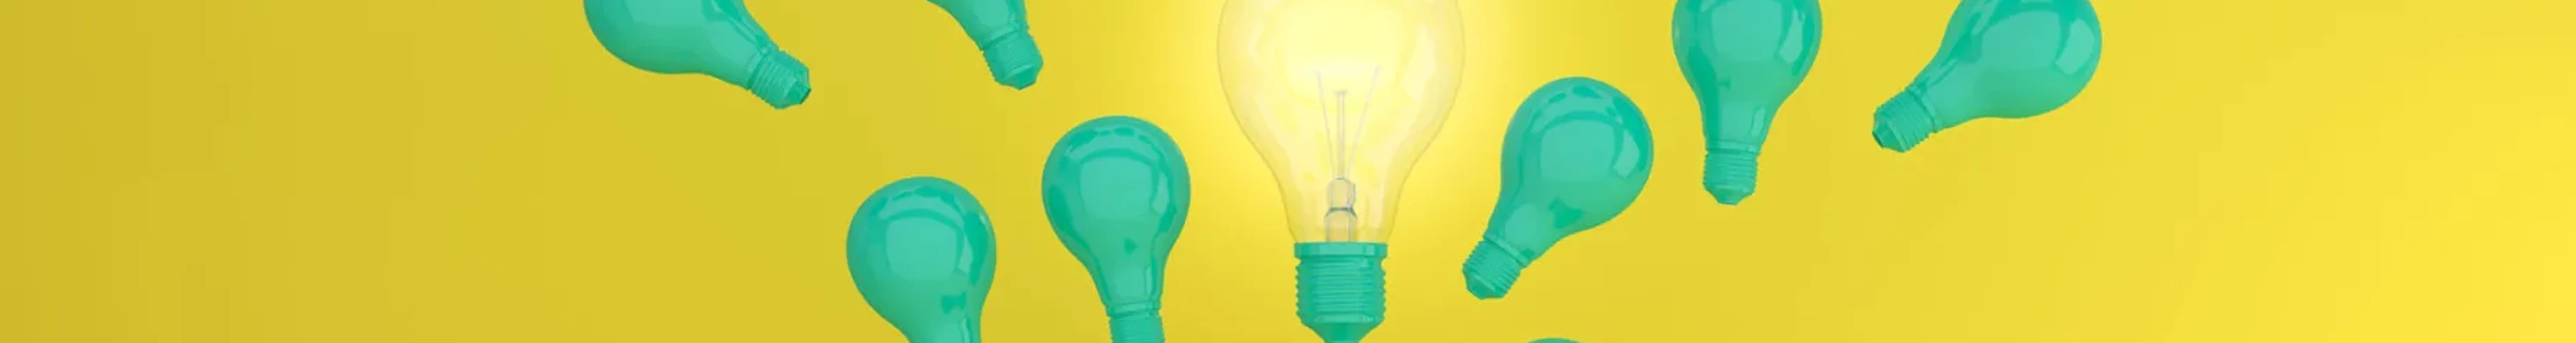 Light bulbs as ideas